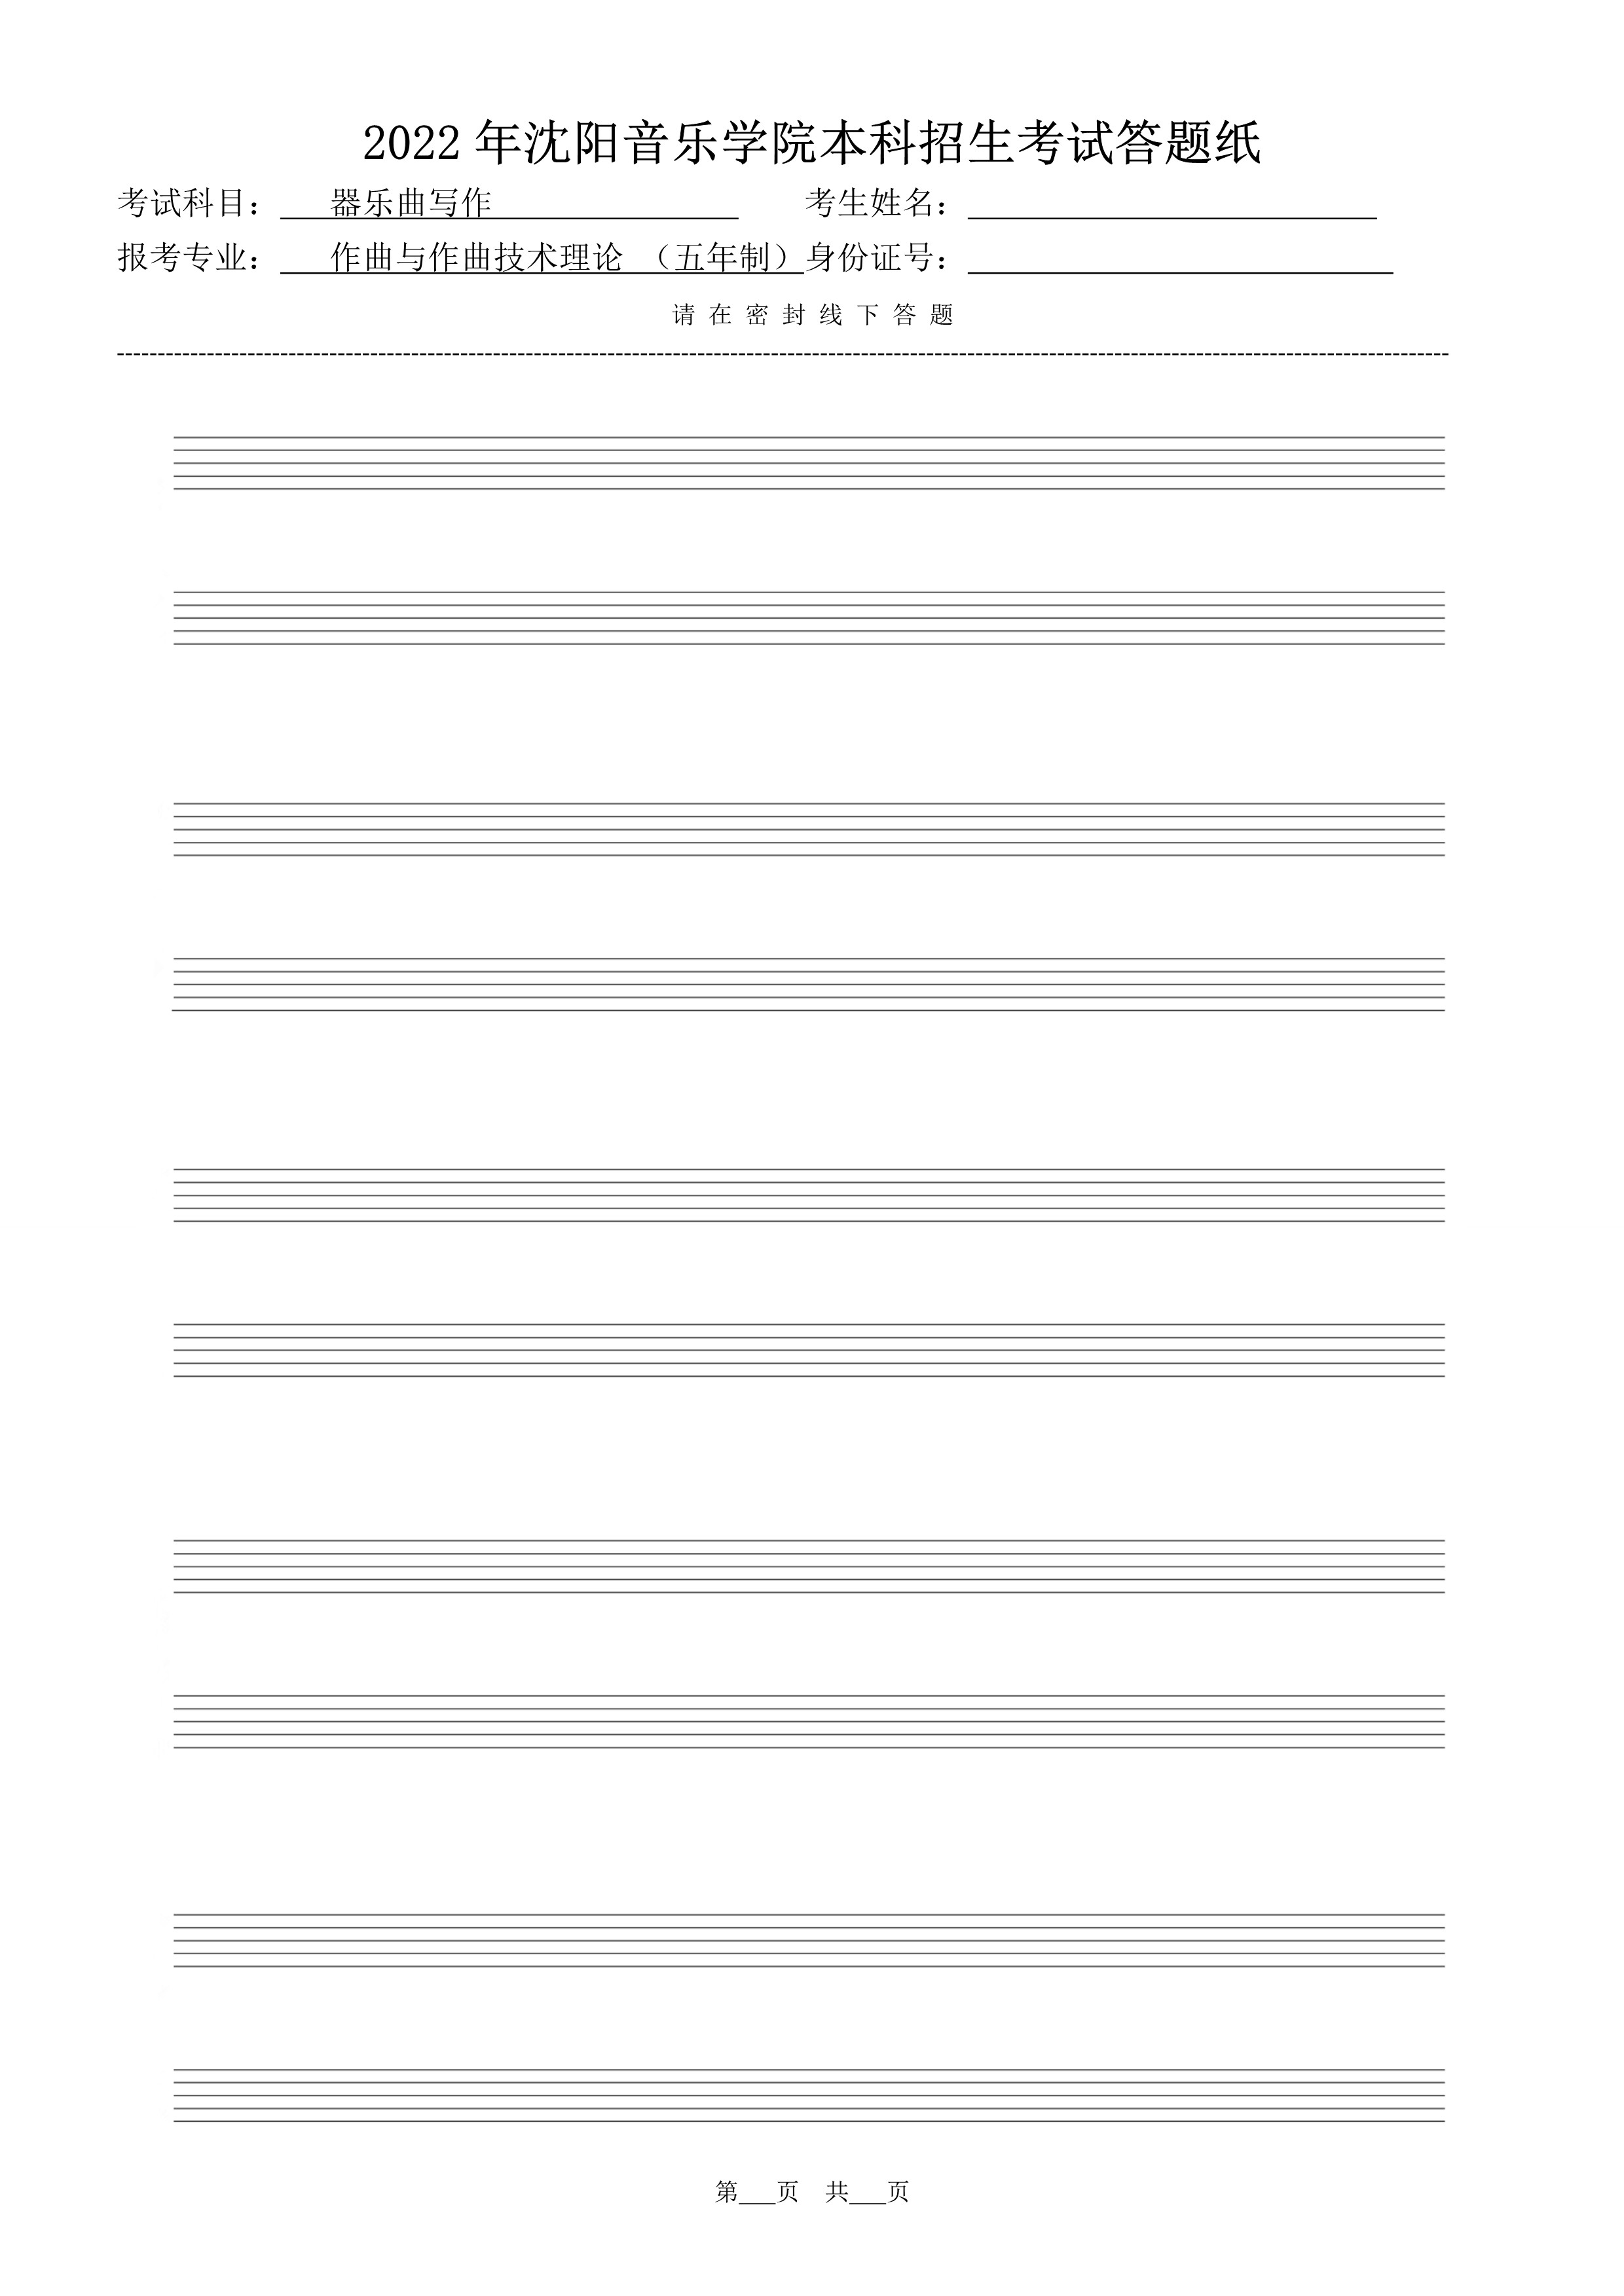 复试器乐曲写作答题纸（共10张）_1.jpg